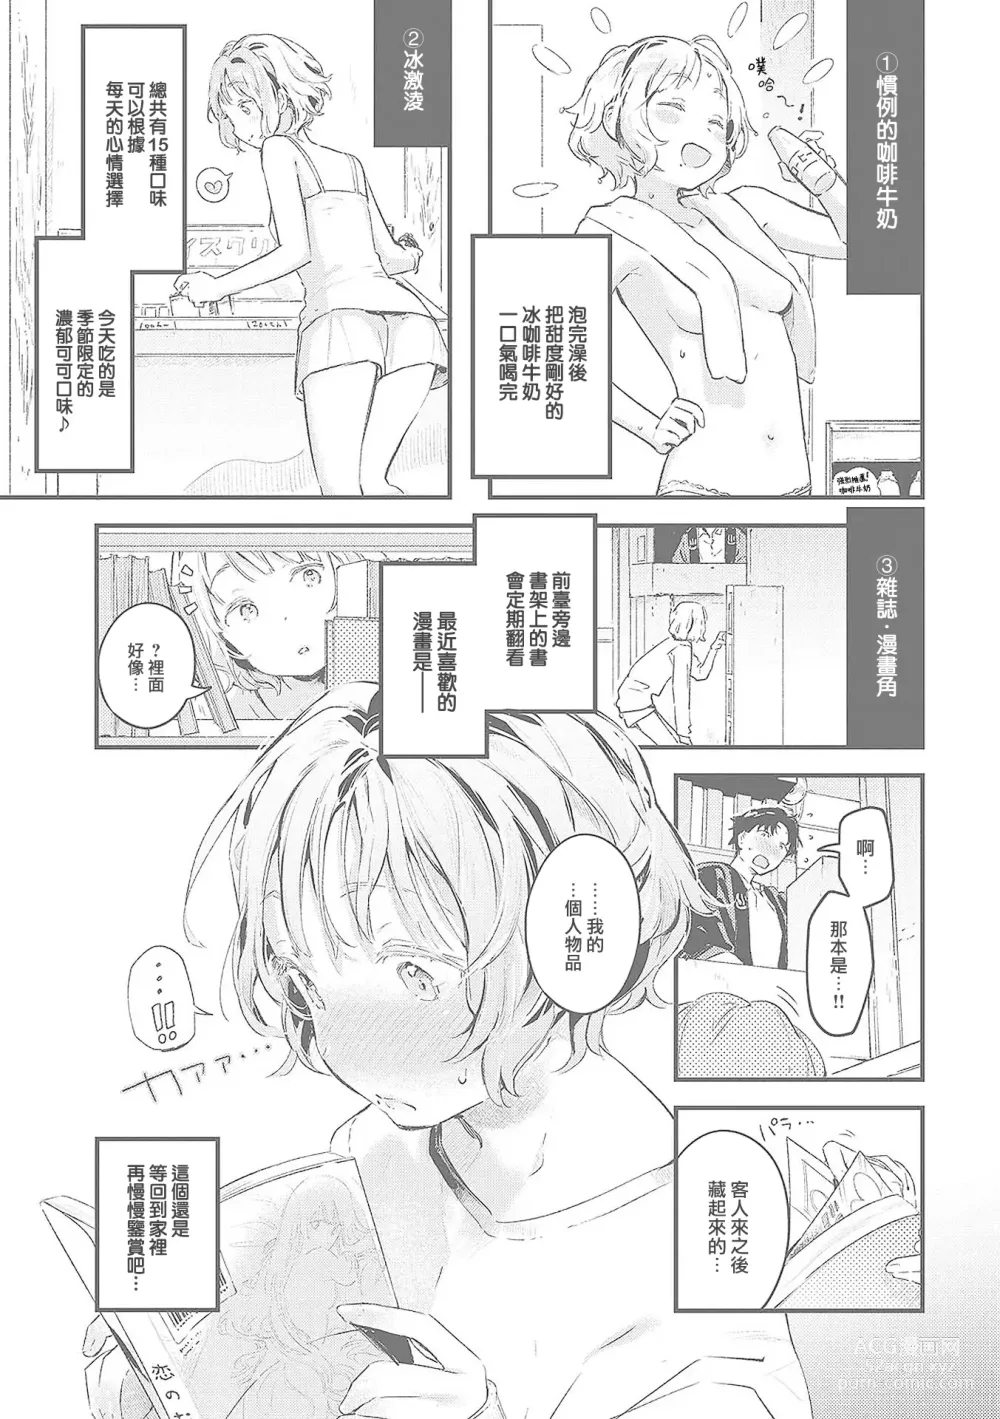 Page 210 of manga Koi no Mukidashi